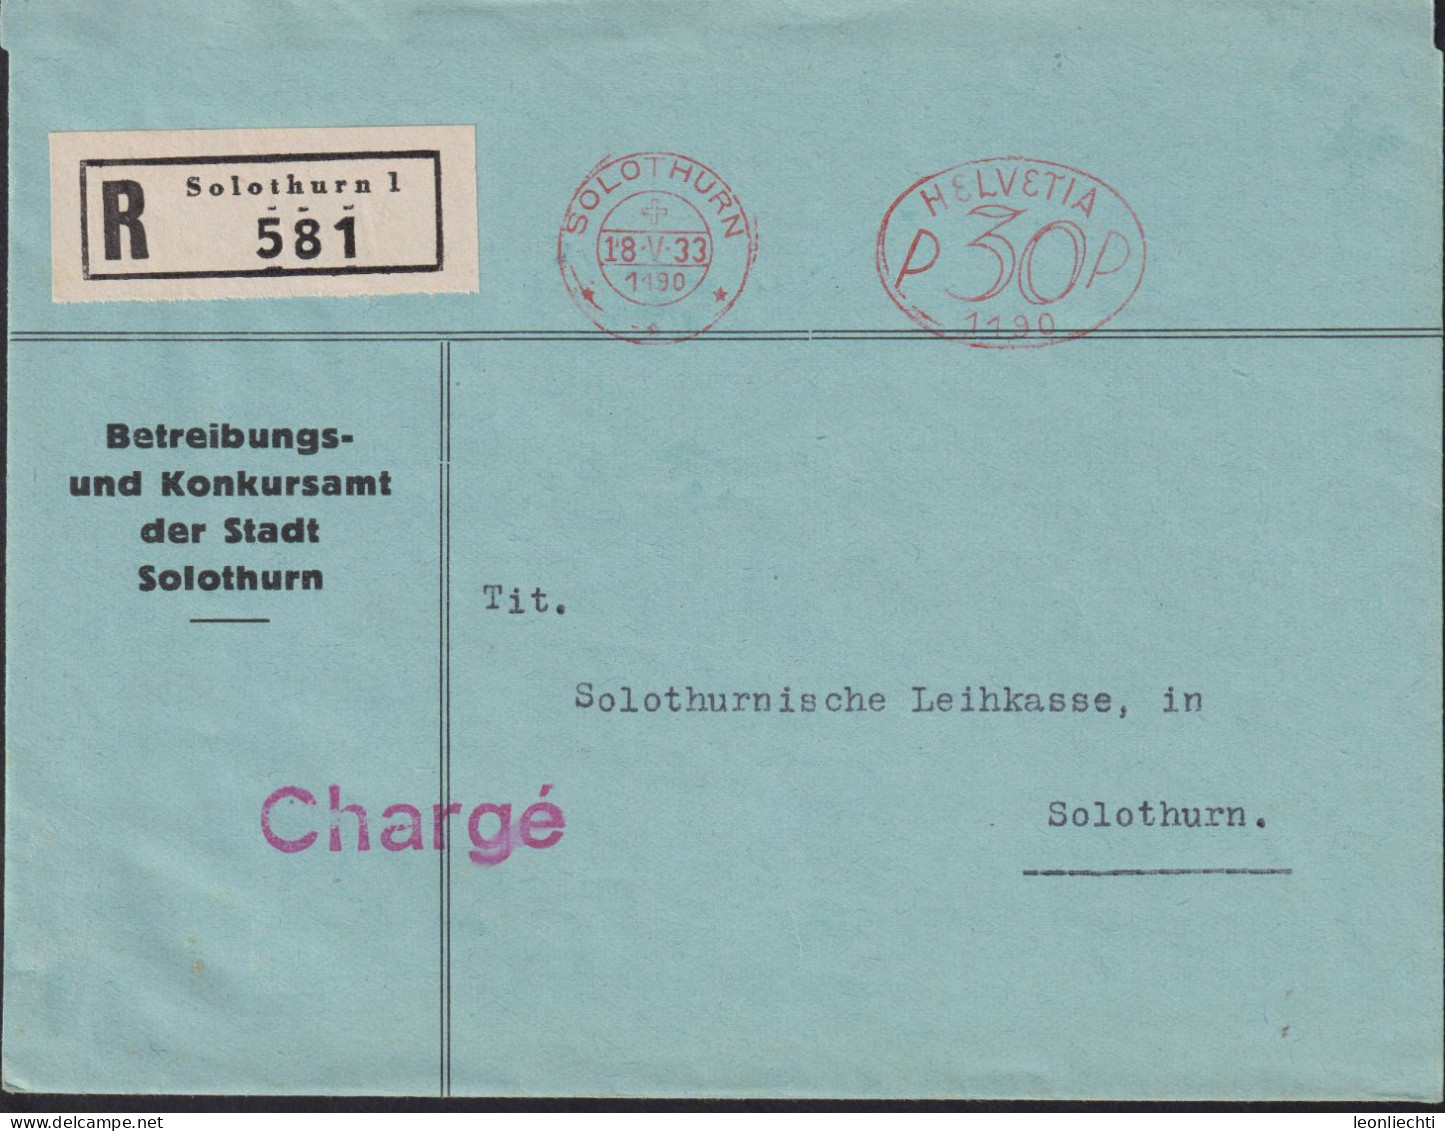 1933 Schweiz, R-Brief (FraMA)  Solothurn + HELVETIA P 30 1190, Betreibungs U. Konkursamt Der Stadt Solothurn - Postage Meters